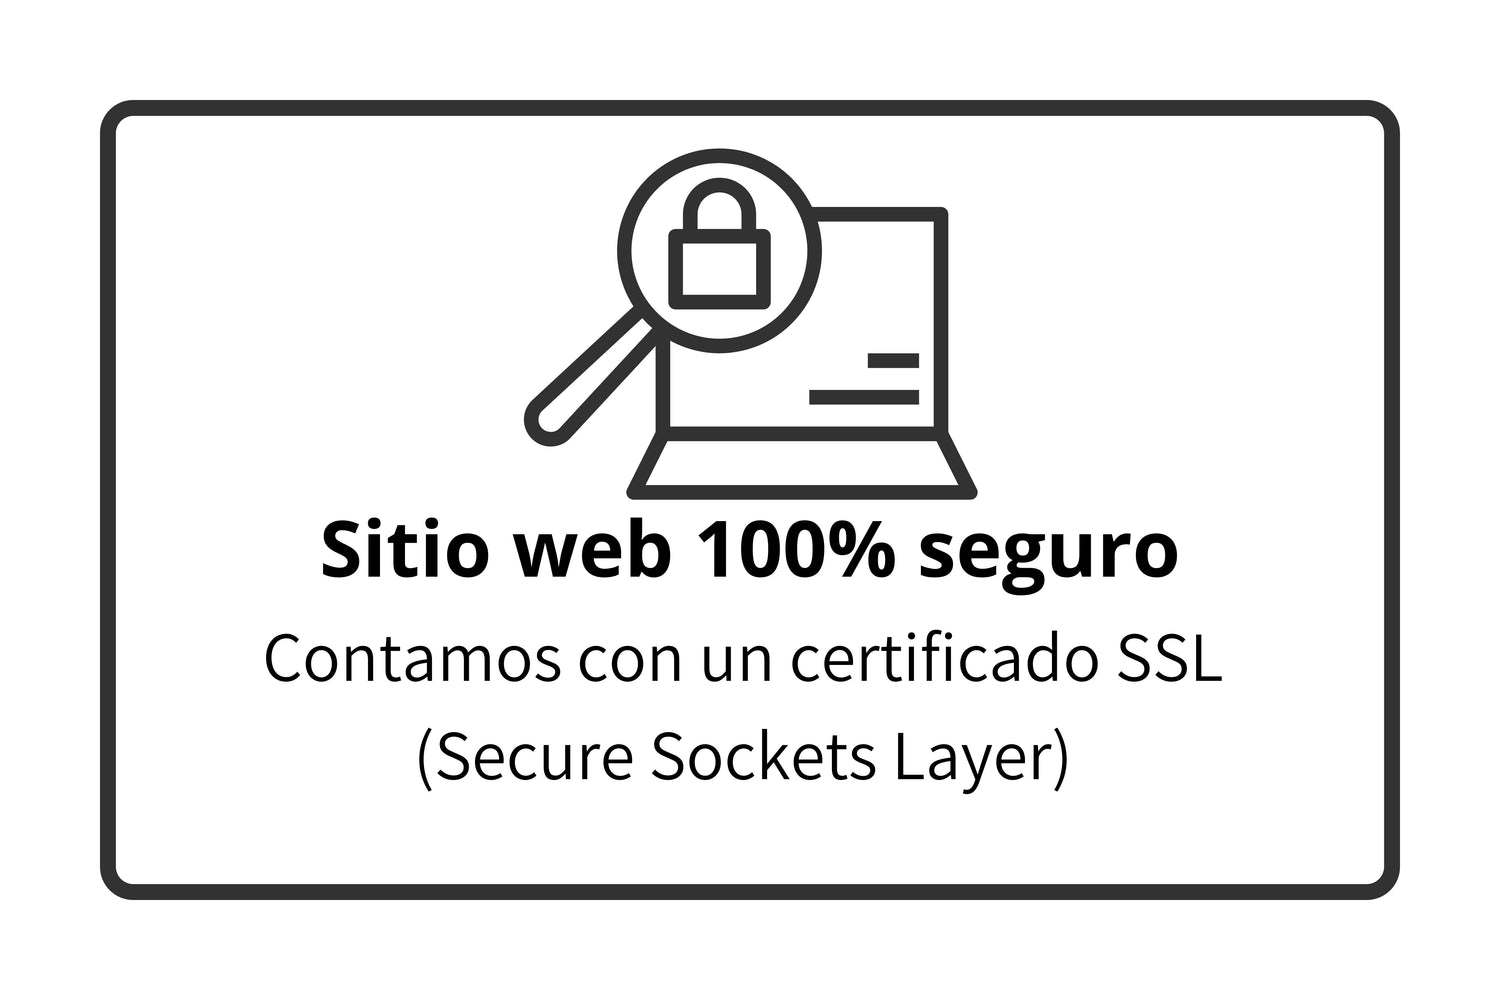 Sitio web 100% seguro, certificado SSL